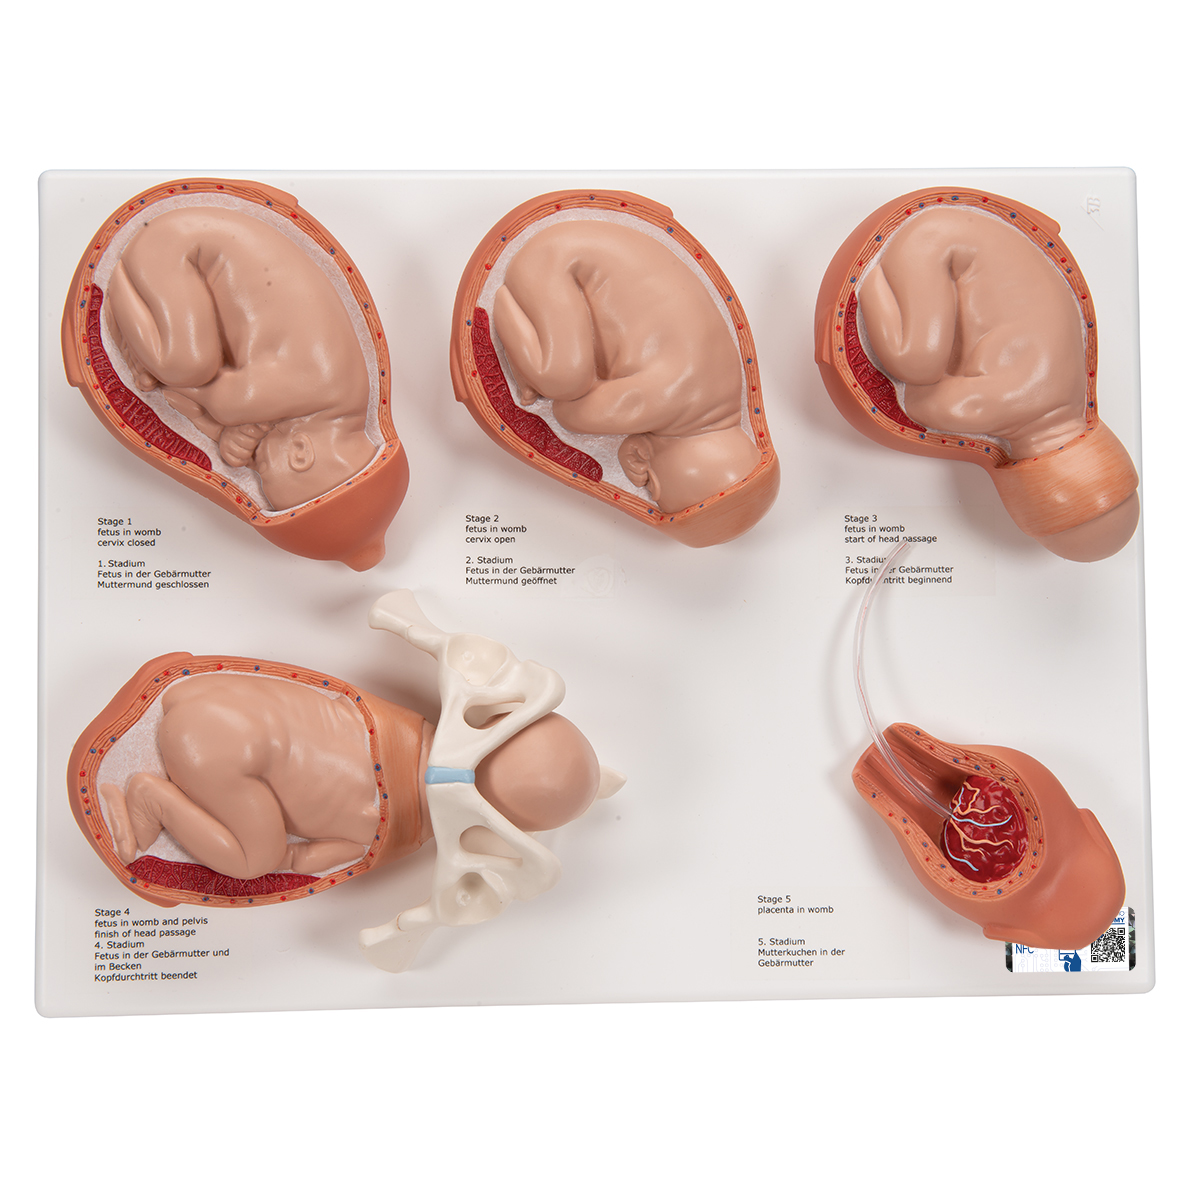 Geburtsstadien Modell - 3B Smart Anatomy, Bestellnummer 1001259, VG393, 3B Scientific